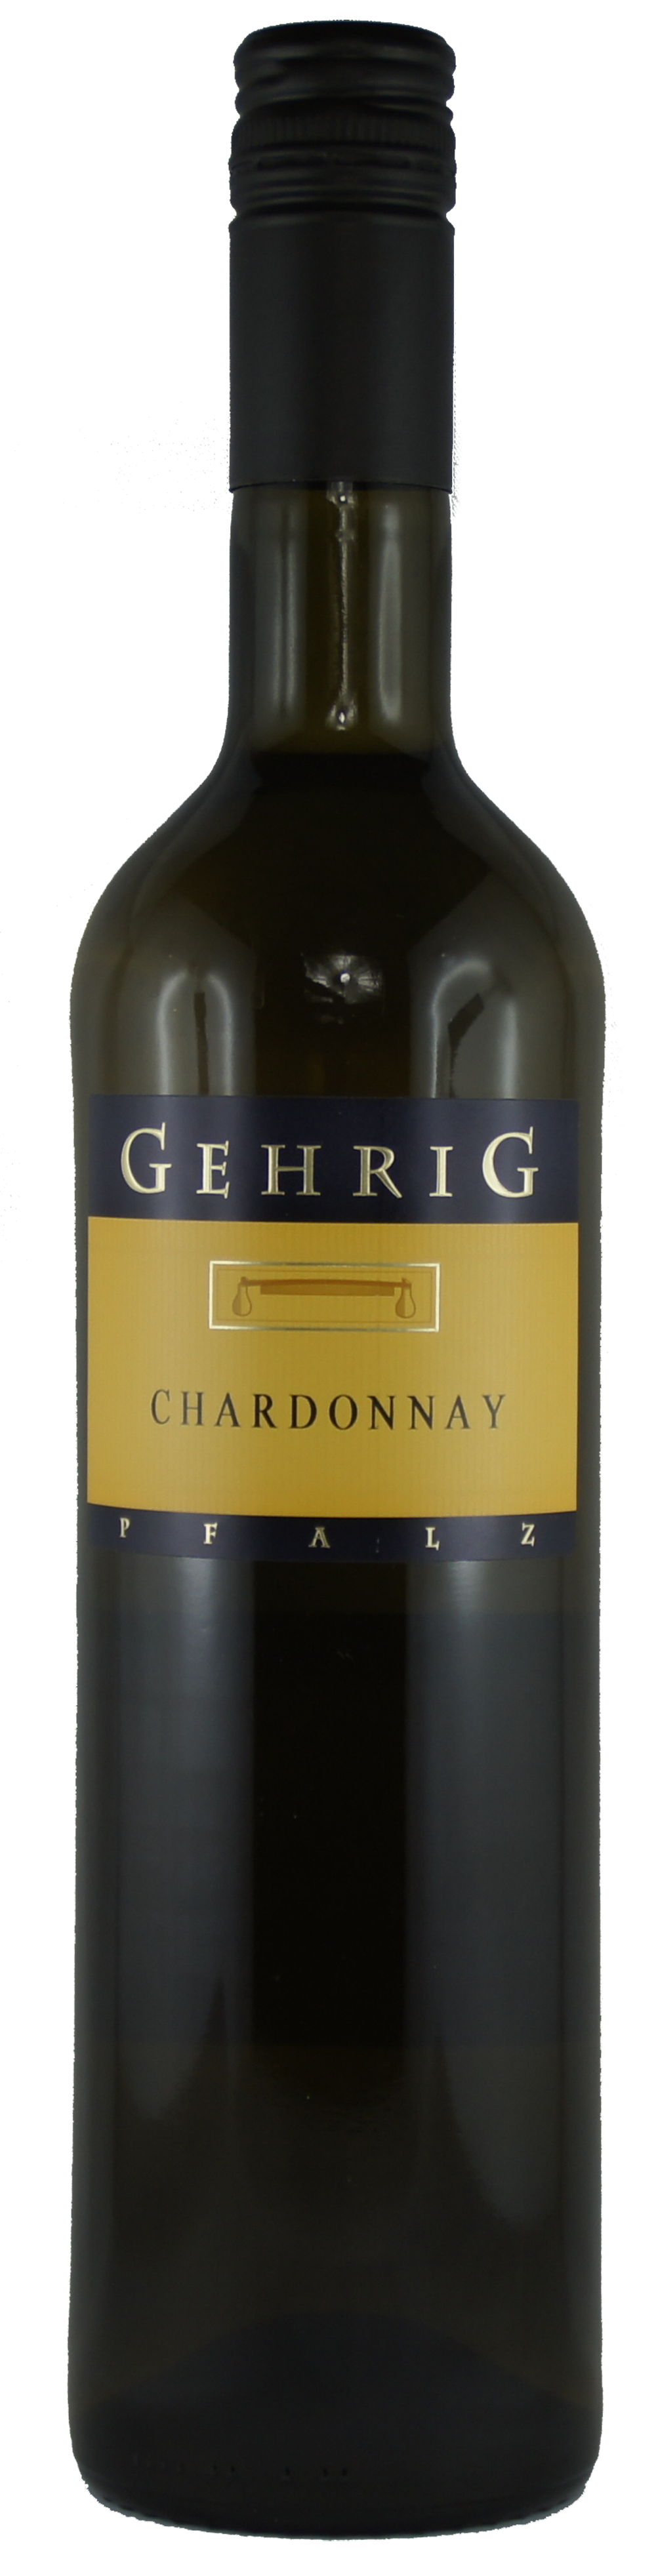 Chardonnay, Pfalz, Weingut Gehrig